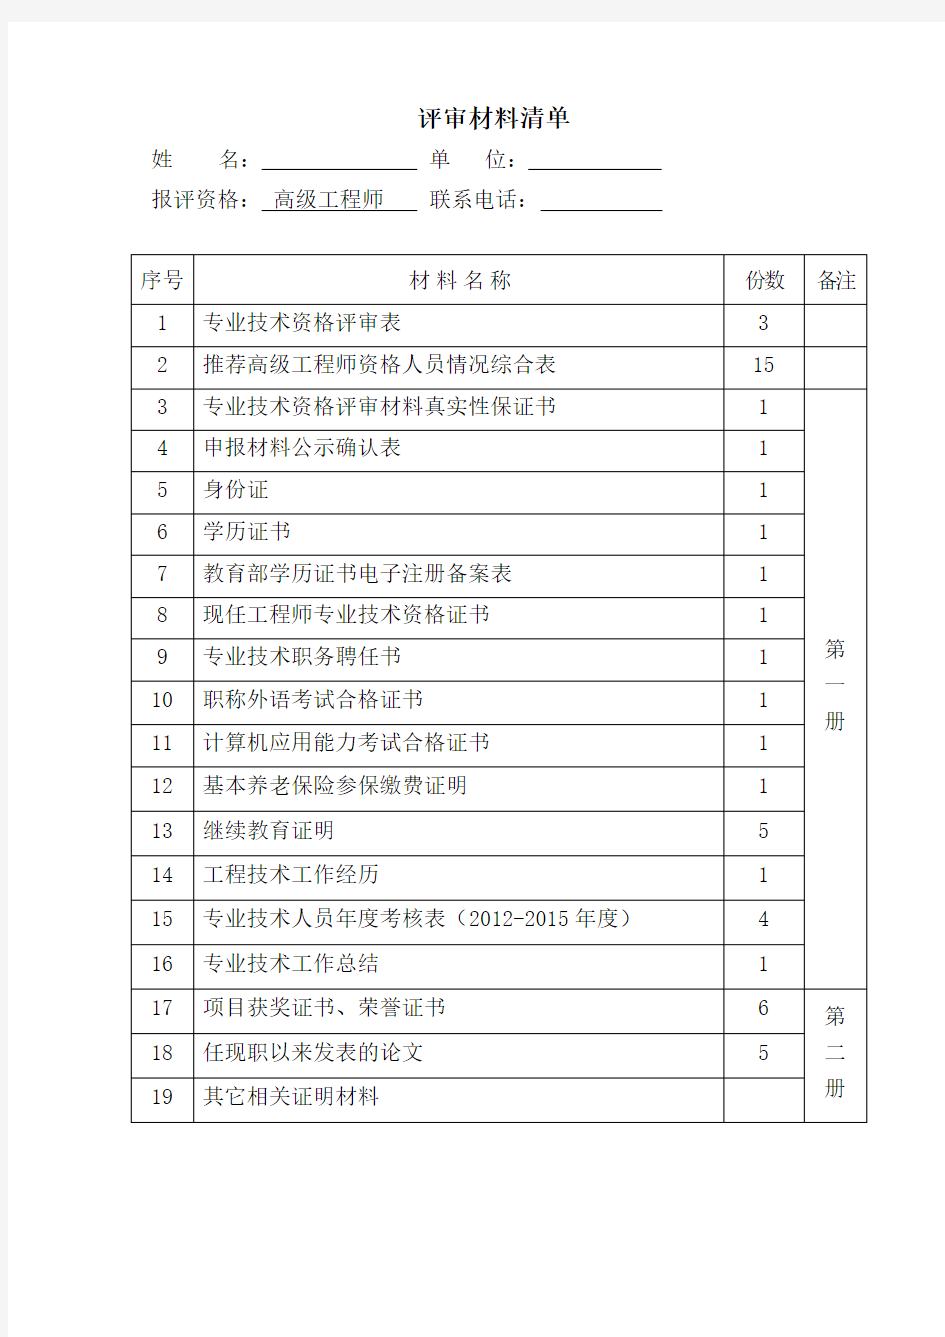 1浙江省高级工程师-职称评审材料清单